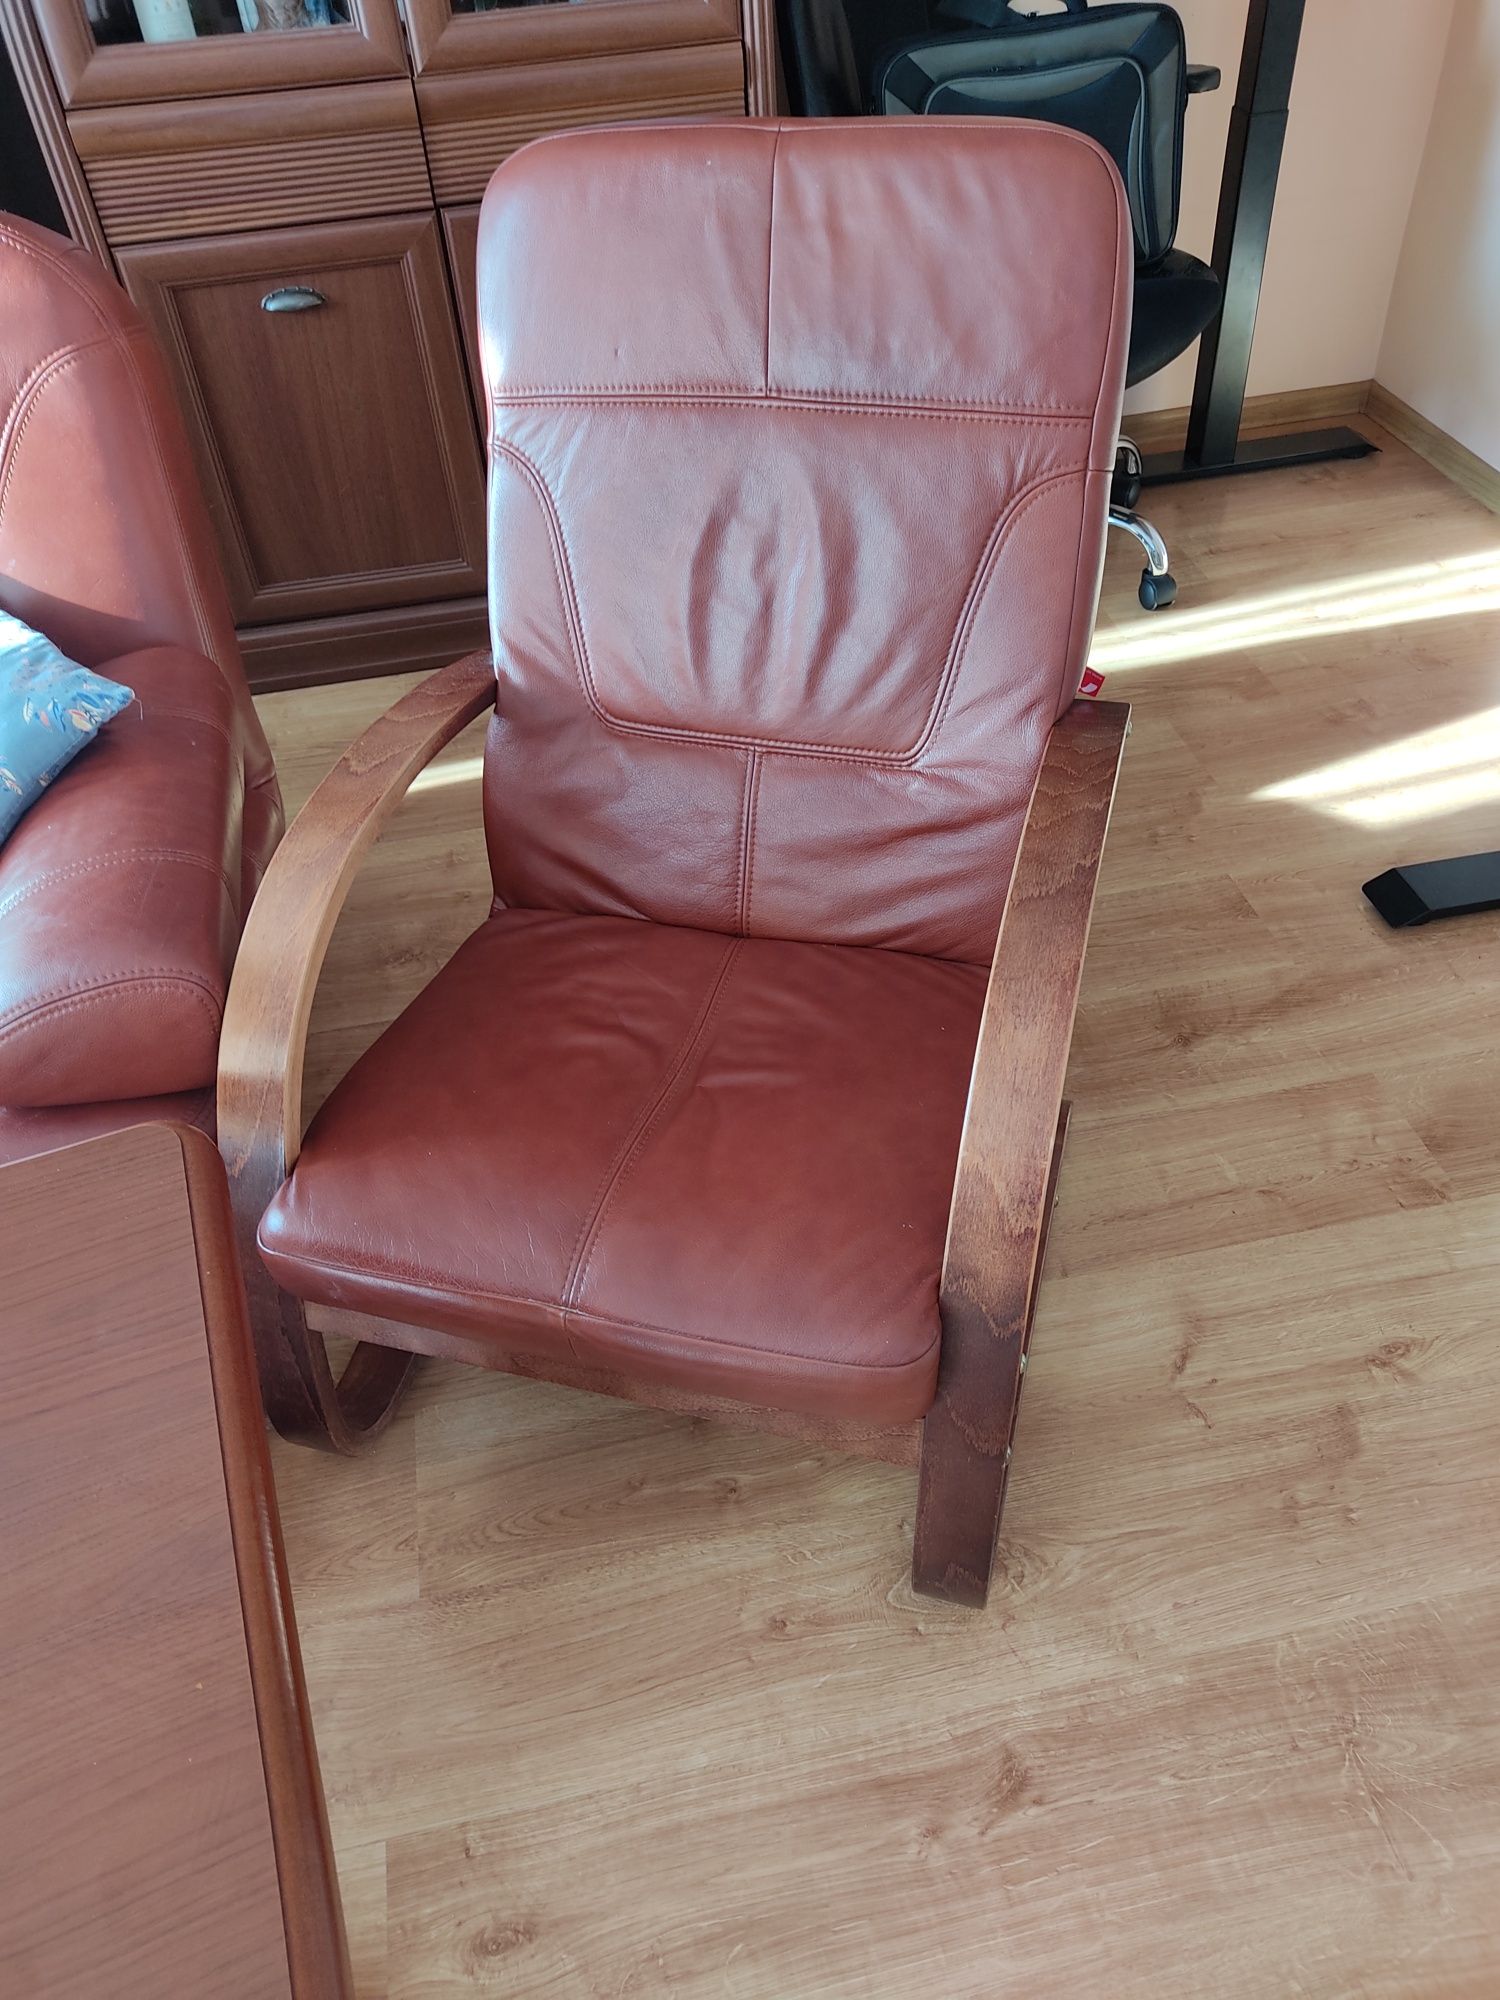 Komplet mebli skórzanych sofa kanapa fotele stół ława podnoszona